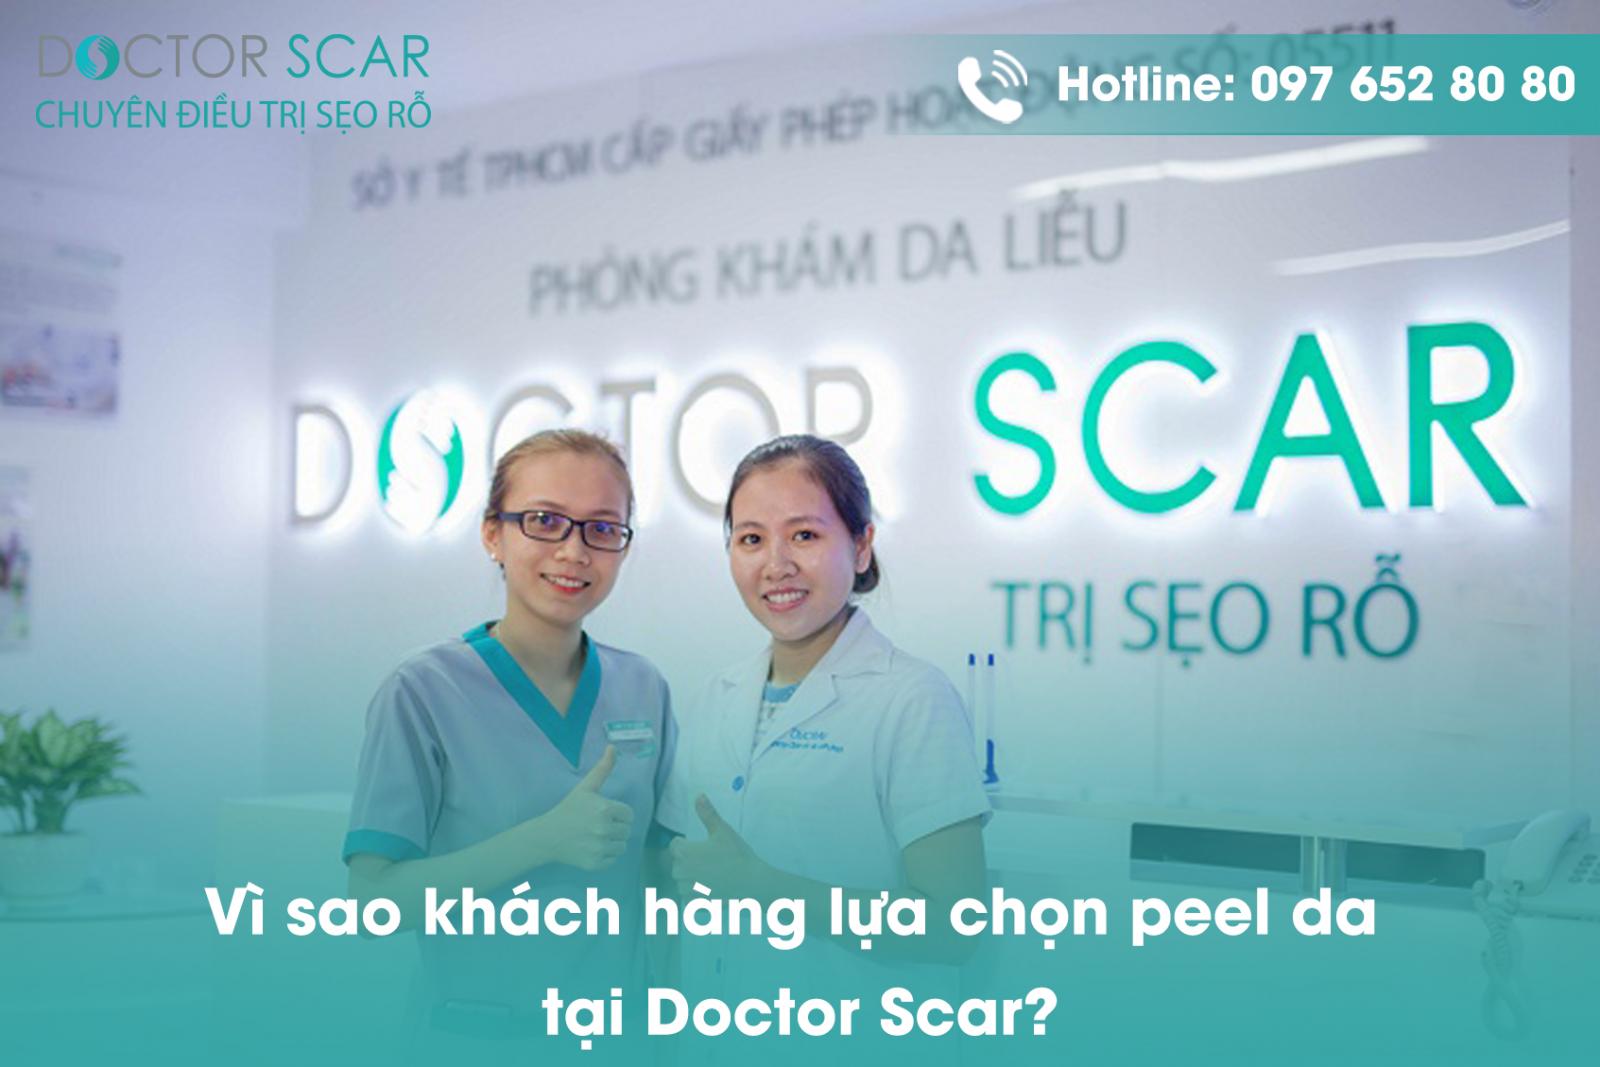 Vì sao khách hàng lựa chọn peel da tại Doctor Scar?